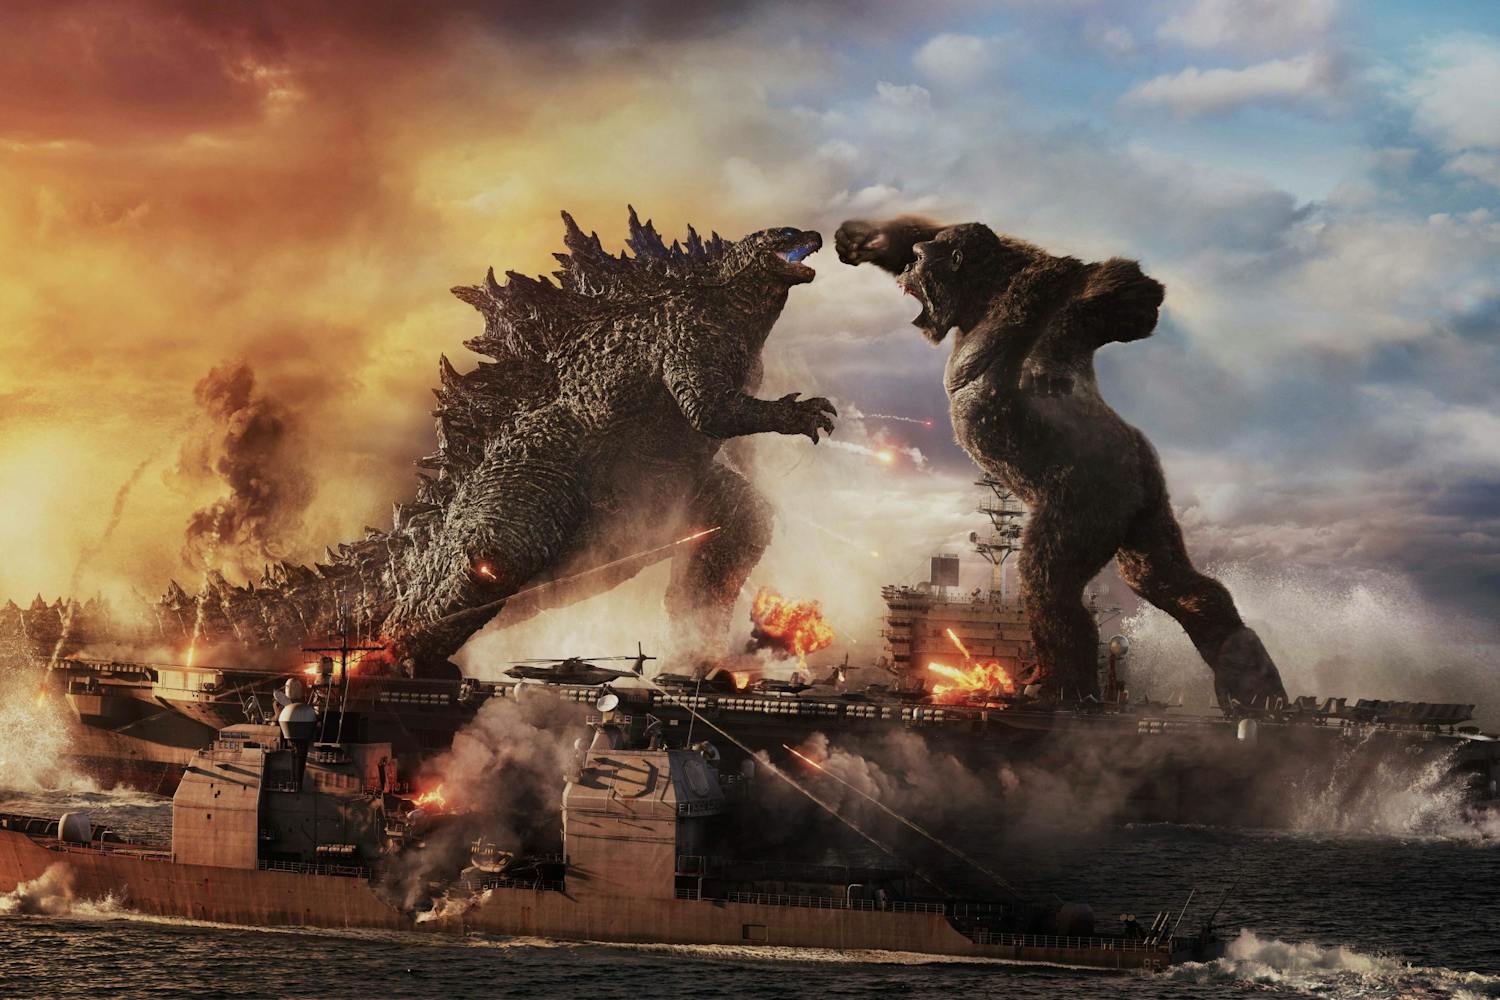 20210330 Godzilla V Kong 1.jpg